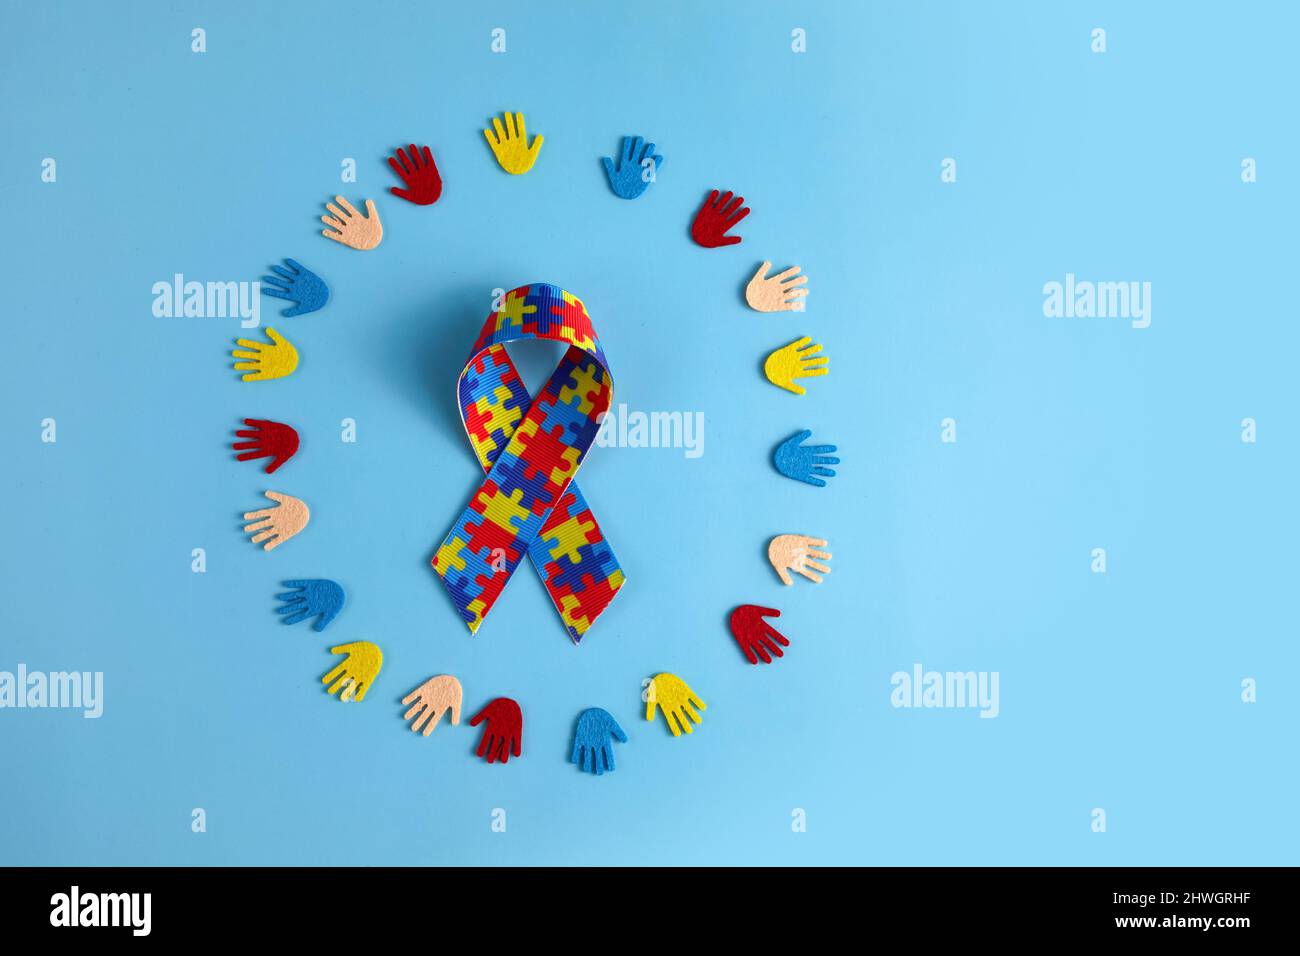 Autismus-Bewusstsein-Konzept mit bunten Händen auf blauem Hintergrund. Draufsicht Stockfoto